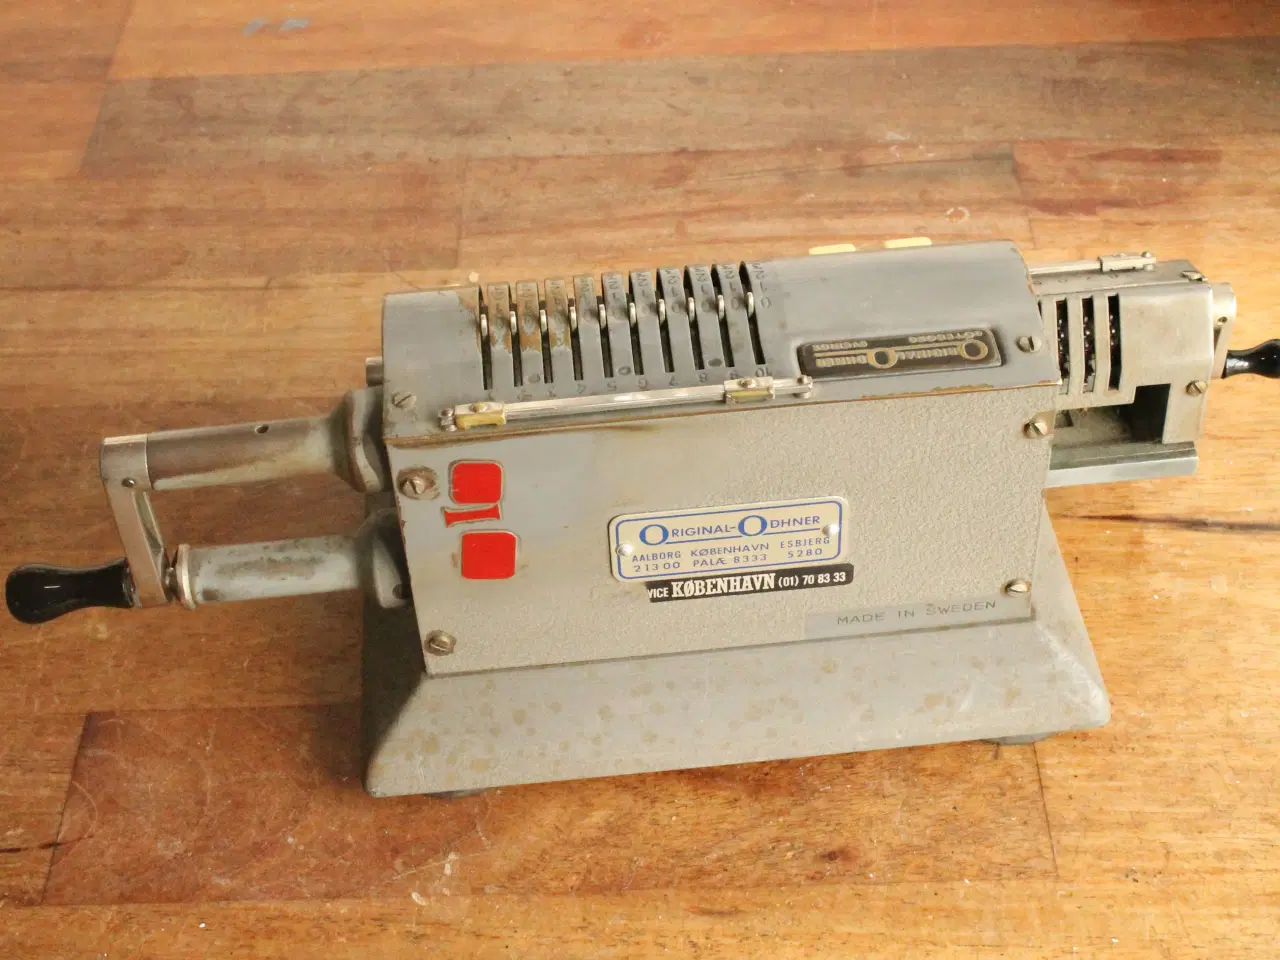 Billede 2 - Regnemaskine, Original-Odhner, model 127